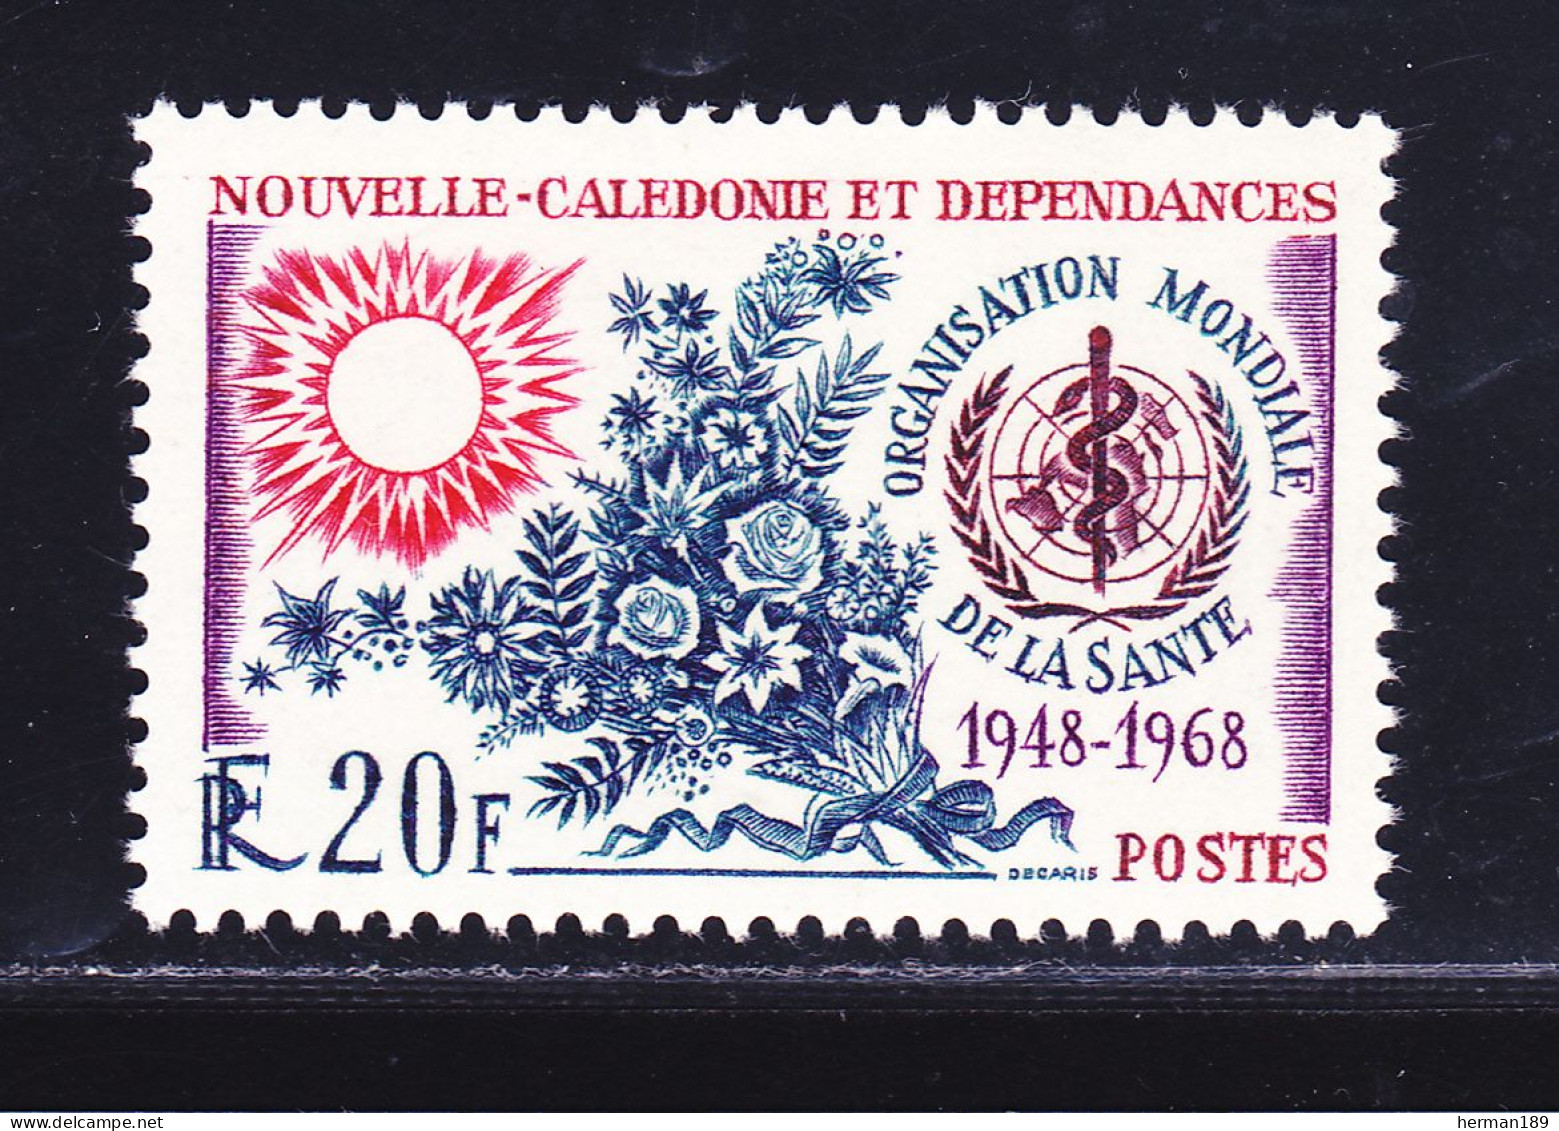 NOUVELLE CALEDONIE N°  351 ** MNH Neuf Sans Charnière, TB (D6771) Anniversaire De L'O.M.S. - 1968 - Ongebruikt